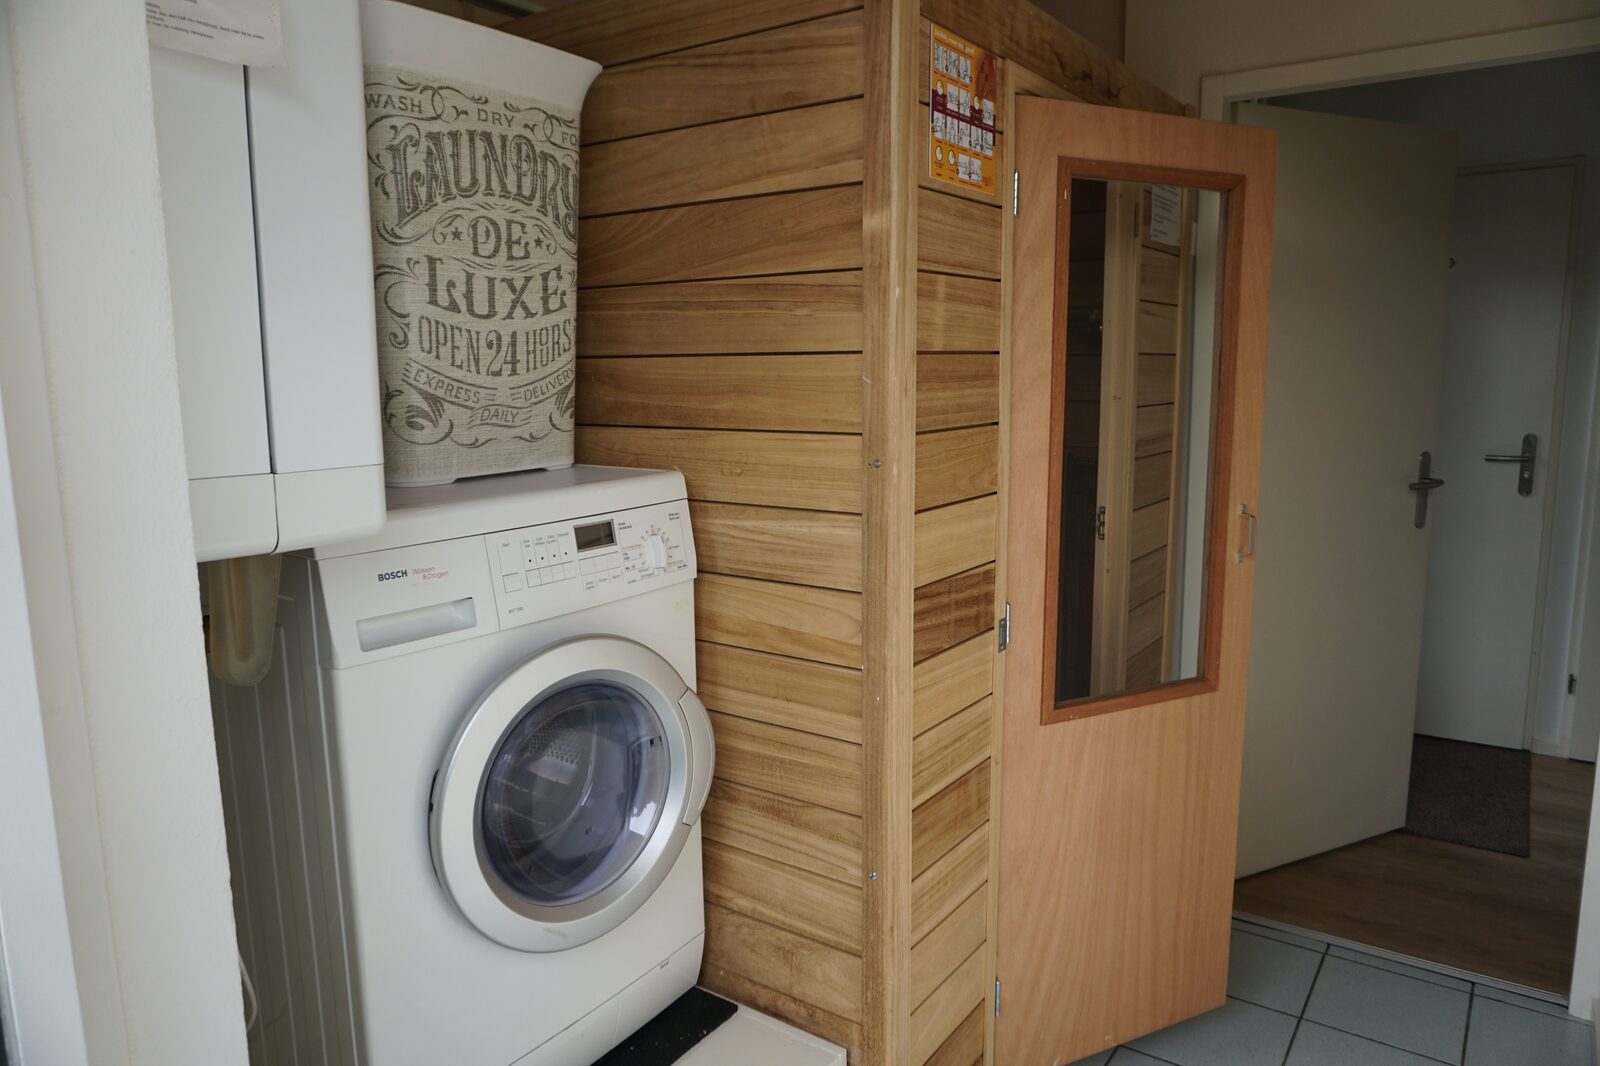 Six-person Bungalow Schipbeek with indoor sauna